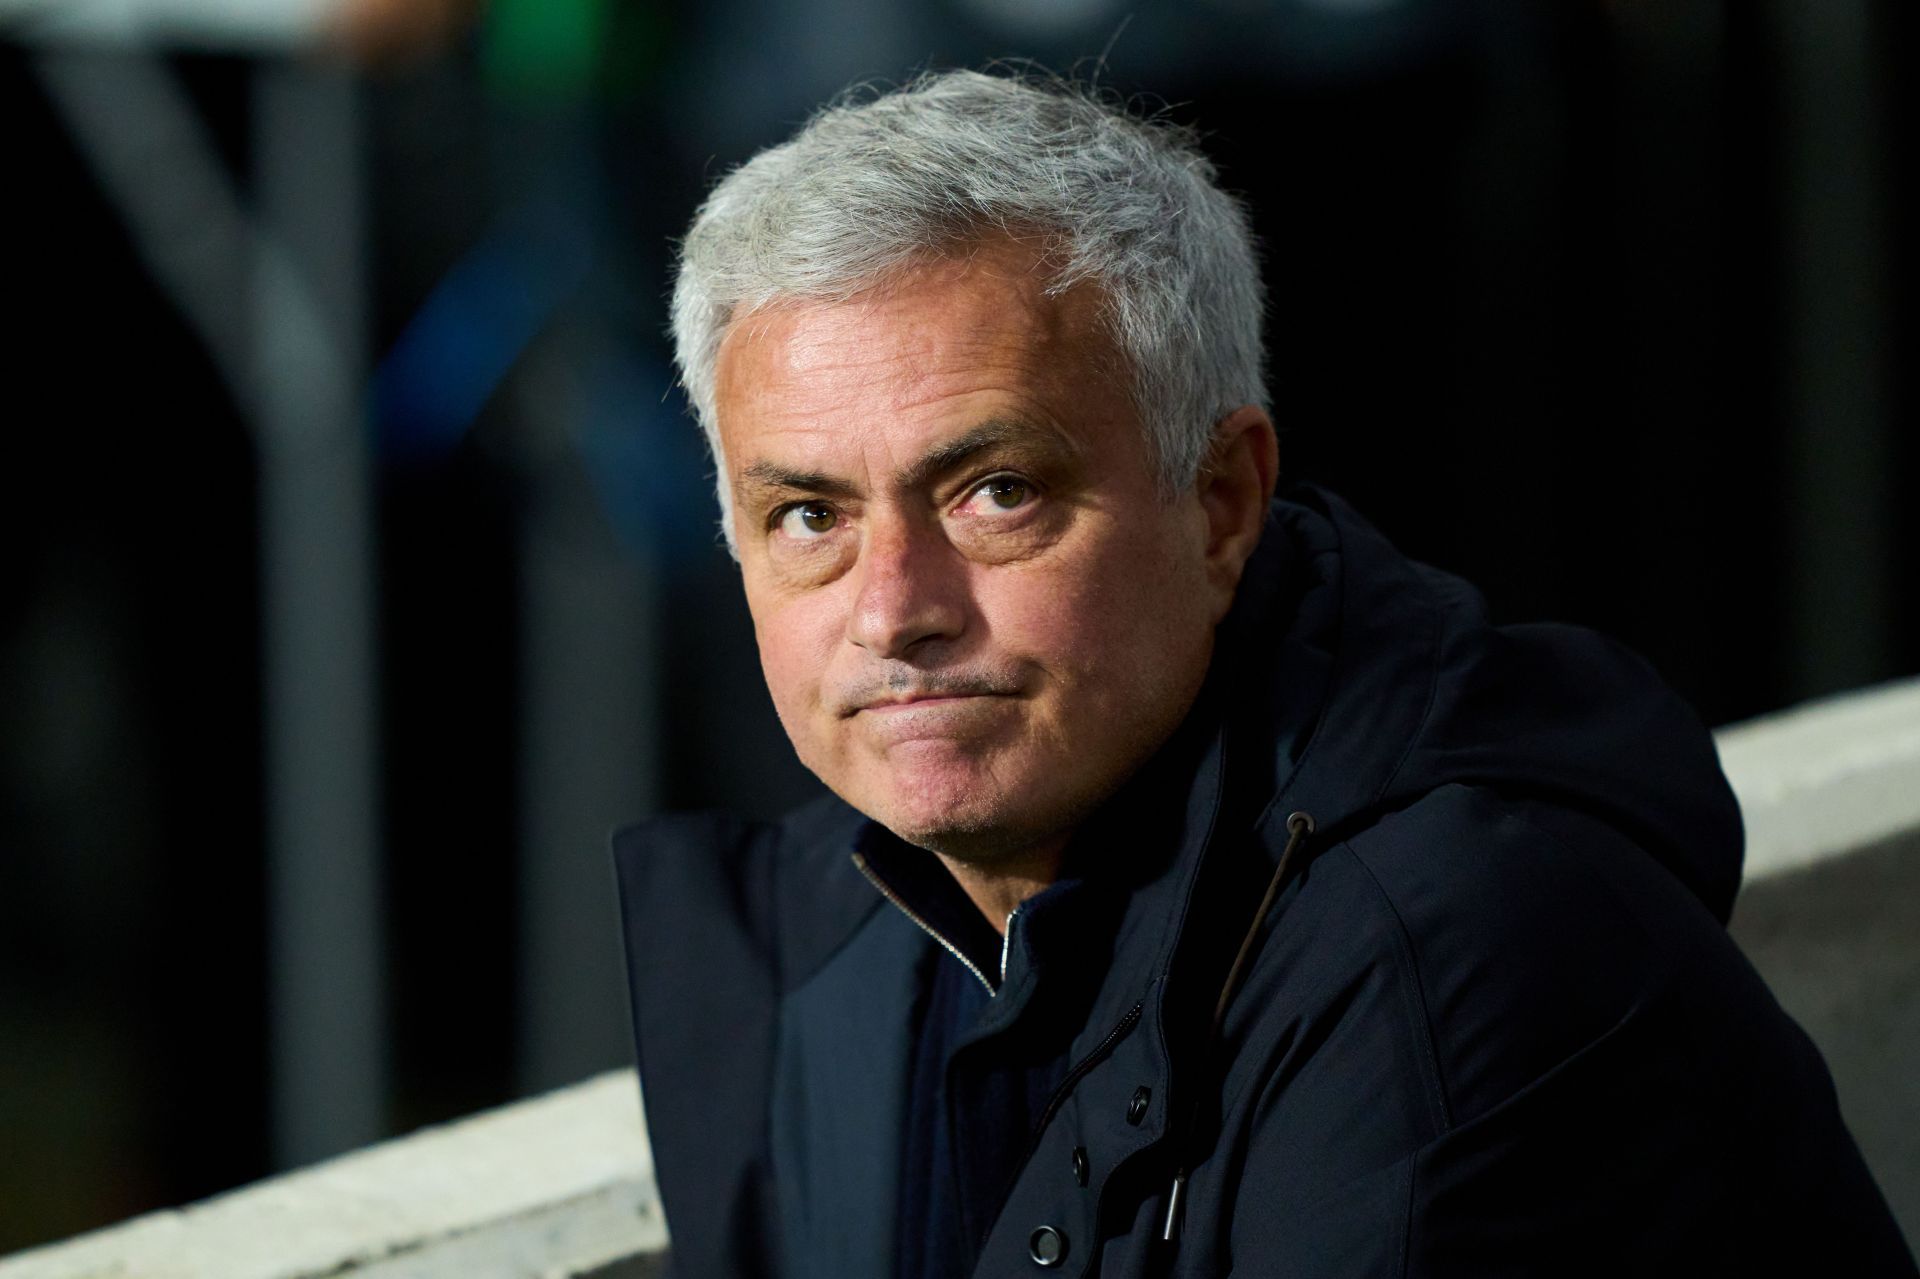 Jose Mourinho responds to speculation regarding move to the Parisians.